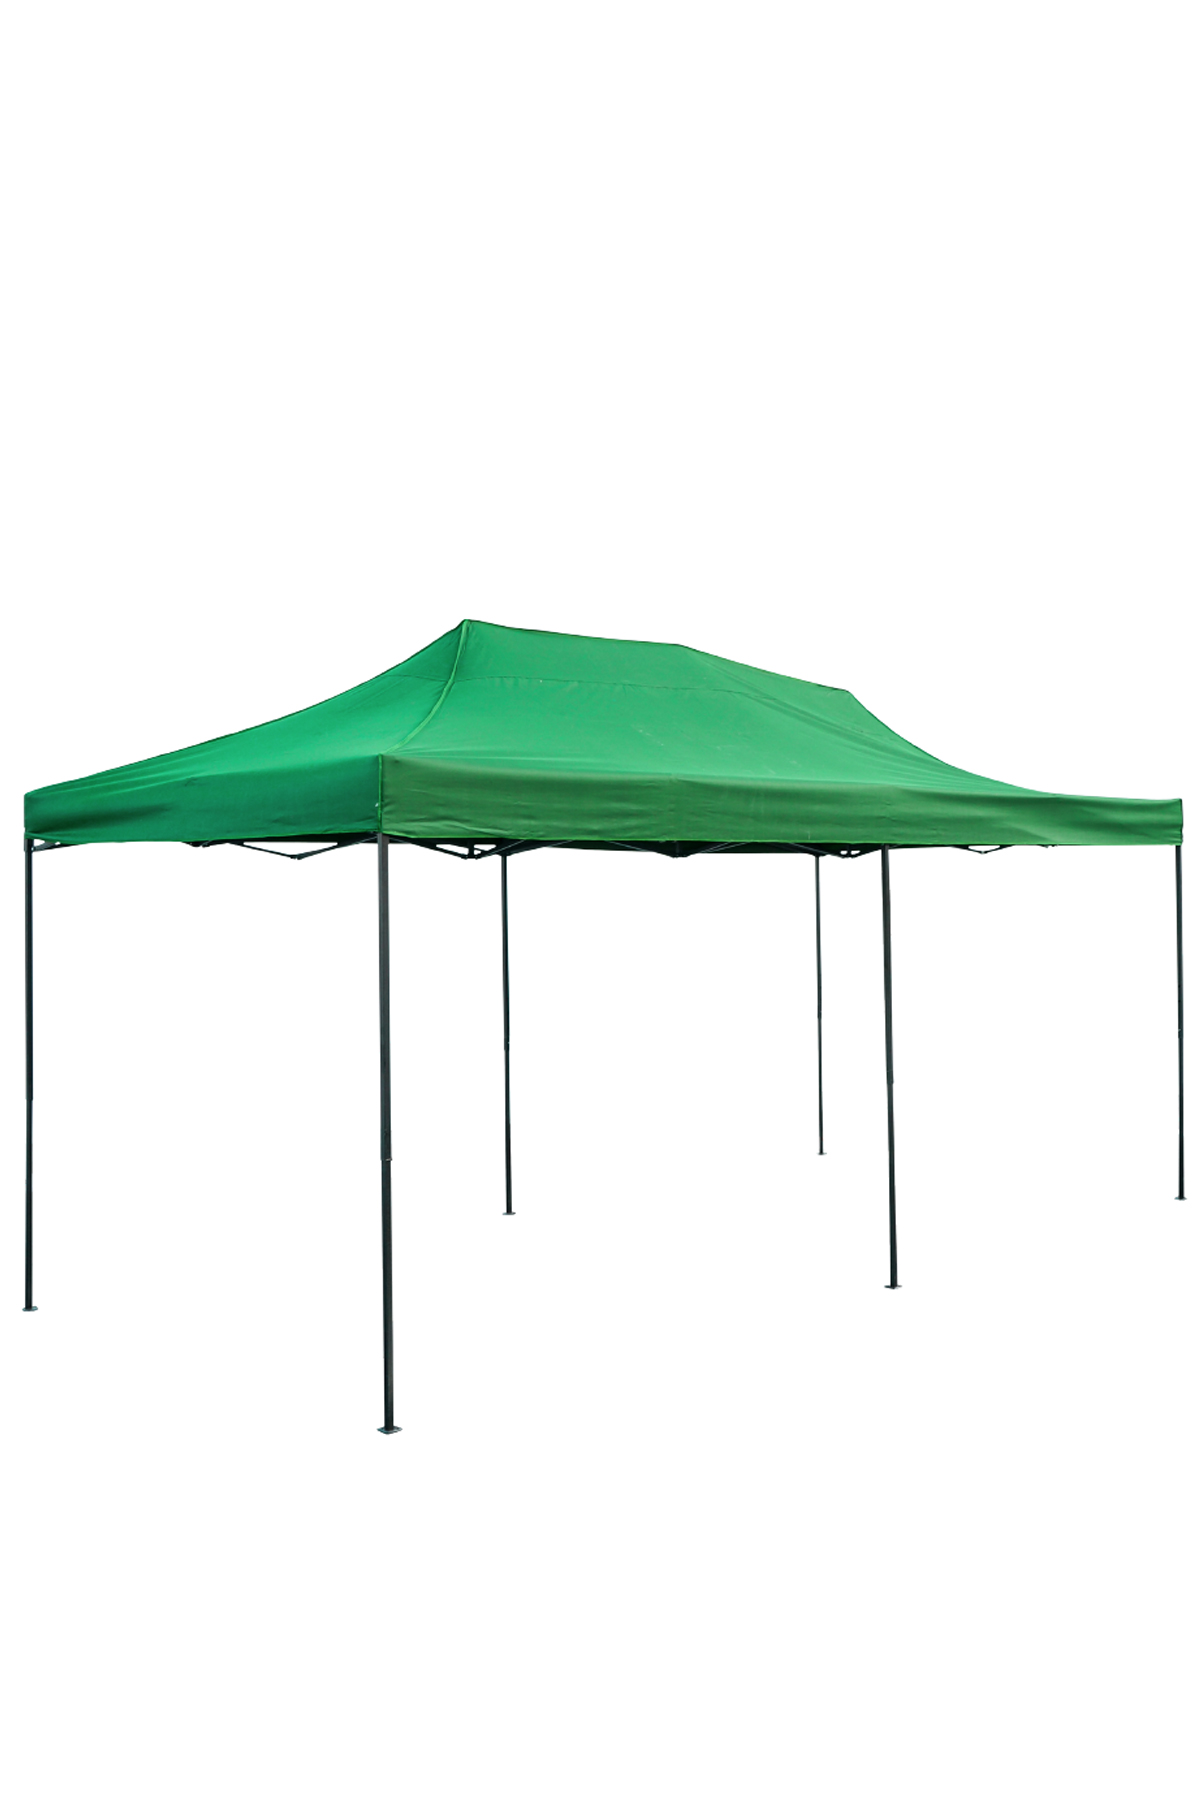 タープテント 3m×6m ワンタッチ 大型 頑丈 強化フレーム 6色 大型テント 長方形 日除け アウトドア キャンプ イベント